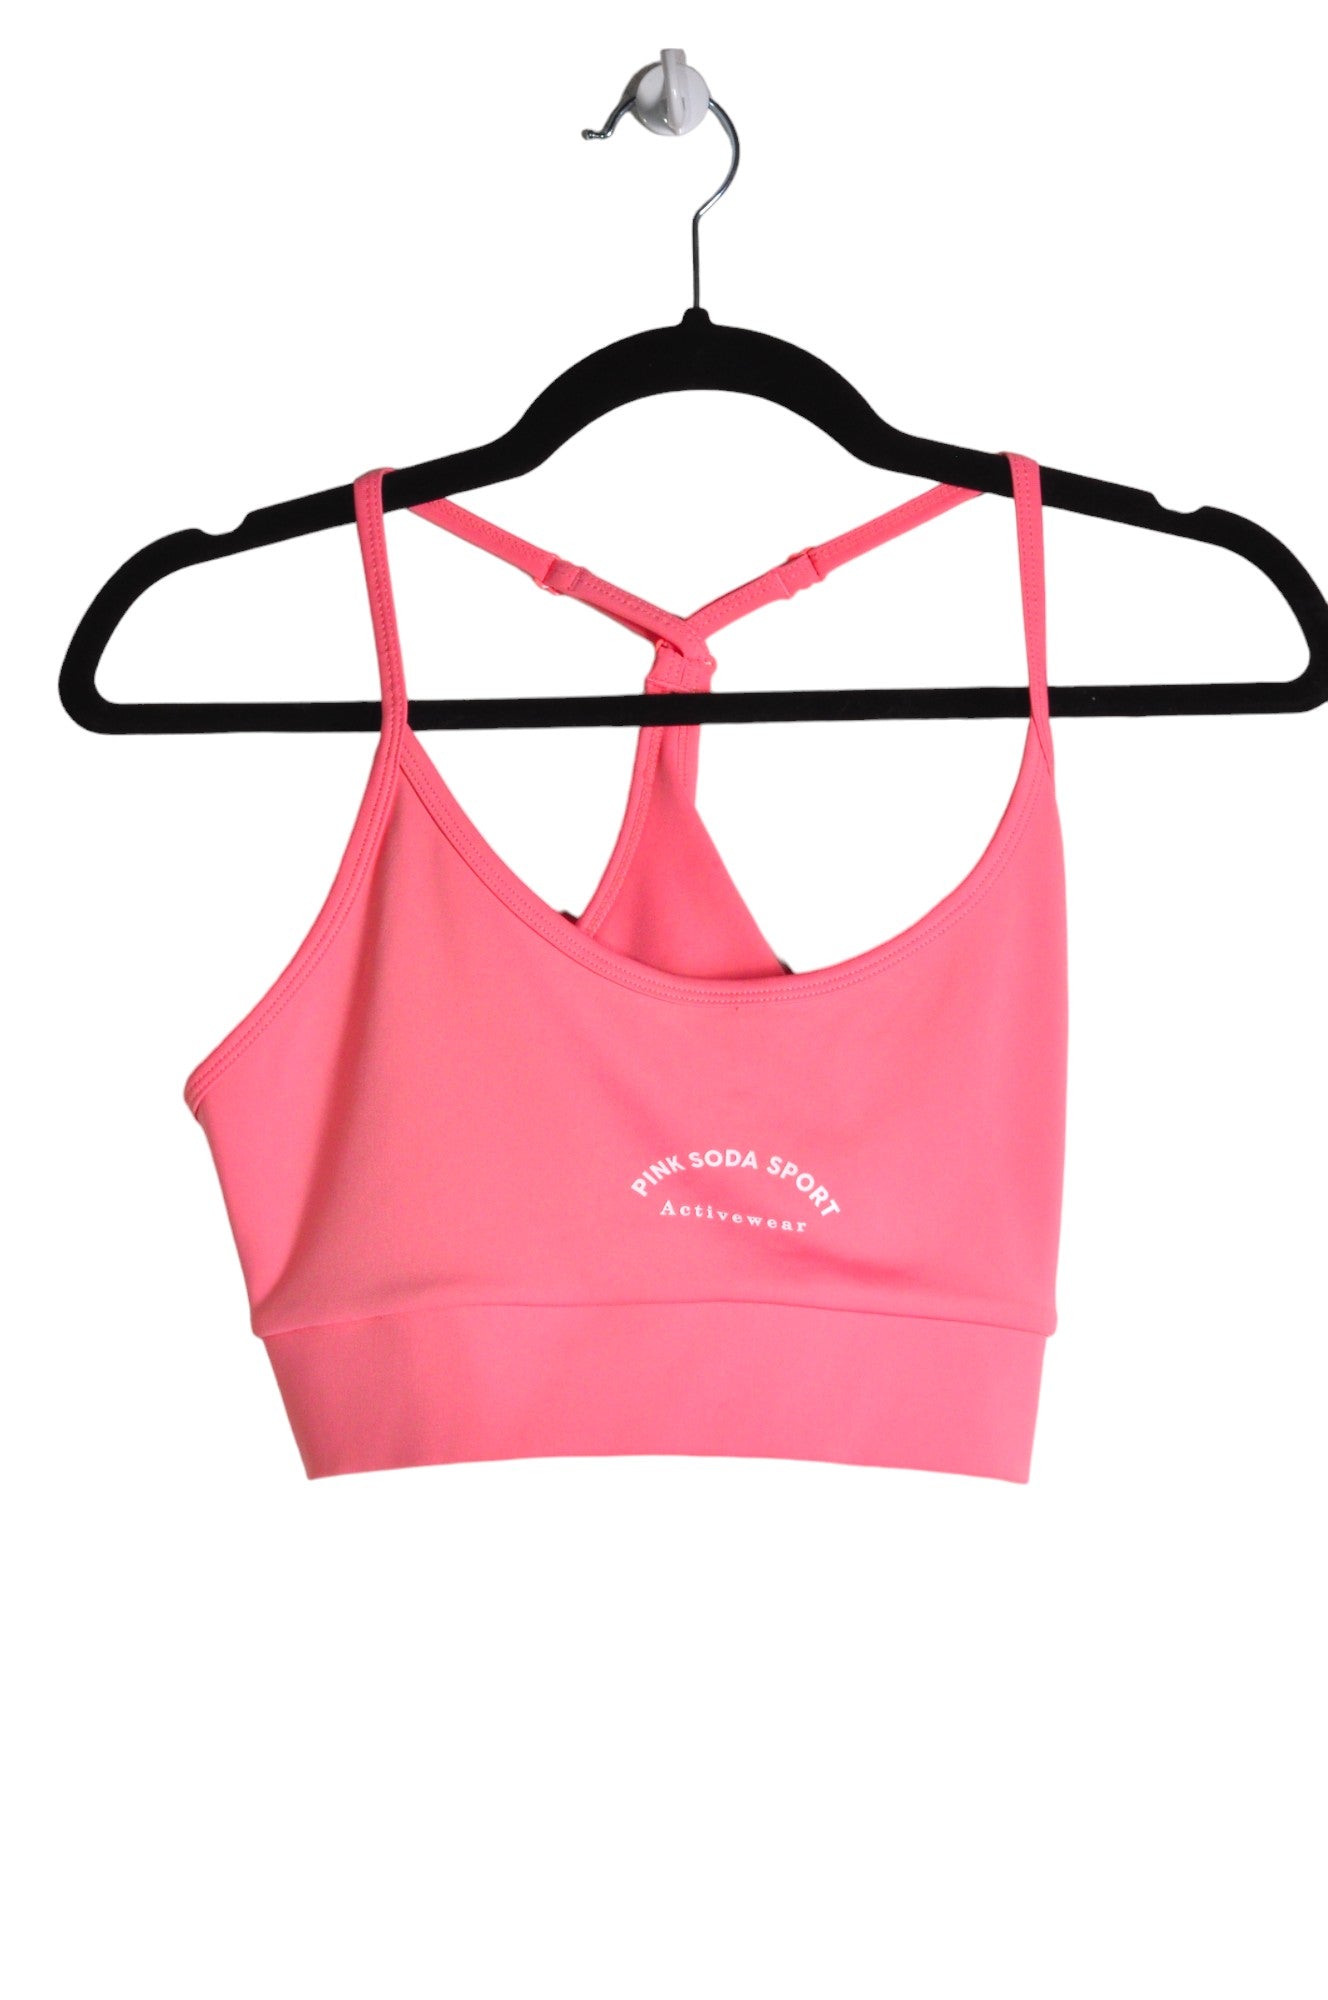 PINK SODA SPORT Women Activewear Sports Bras Regular fit in Pink - Size L | 11.6 $ KOOP